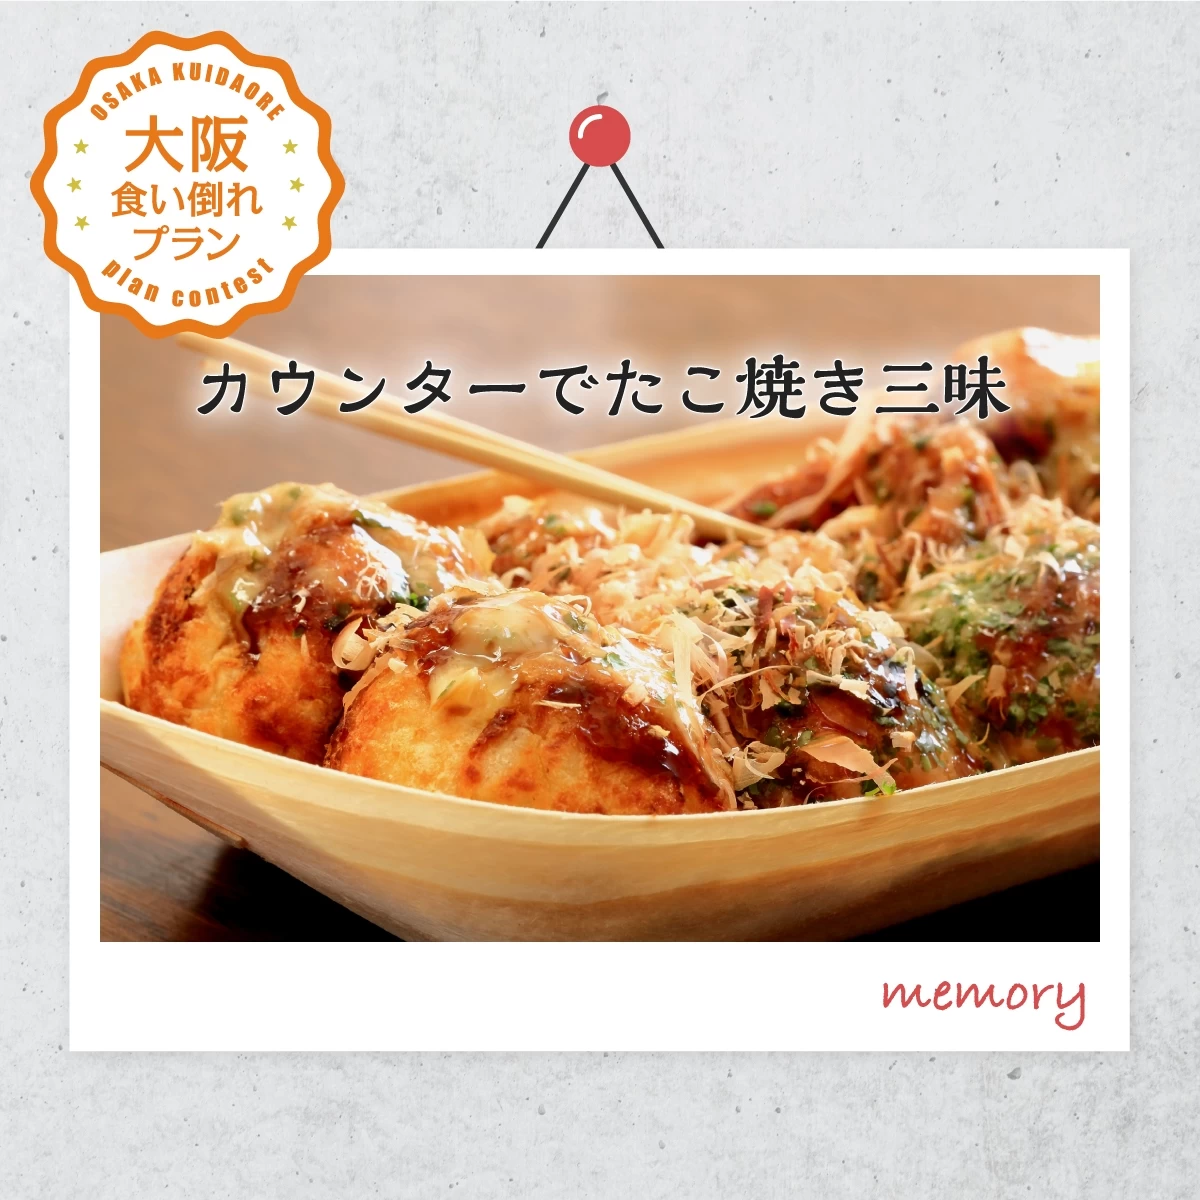 新梅田食道街で安くておいしい“大阪グルメ”を食べ歩き♪